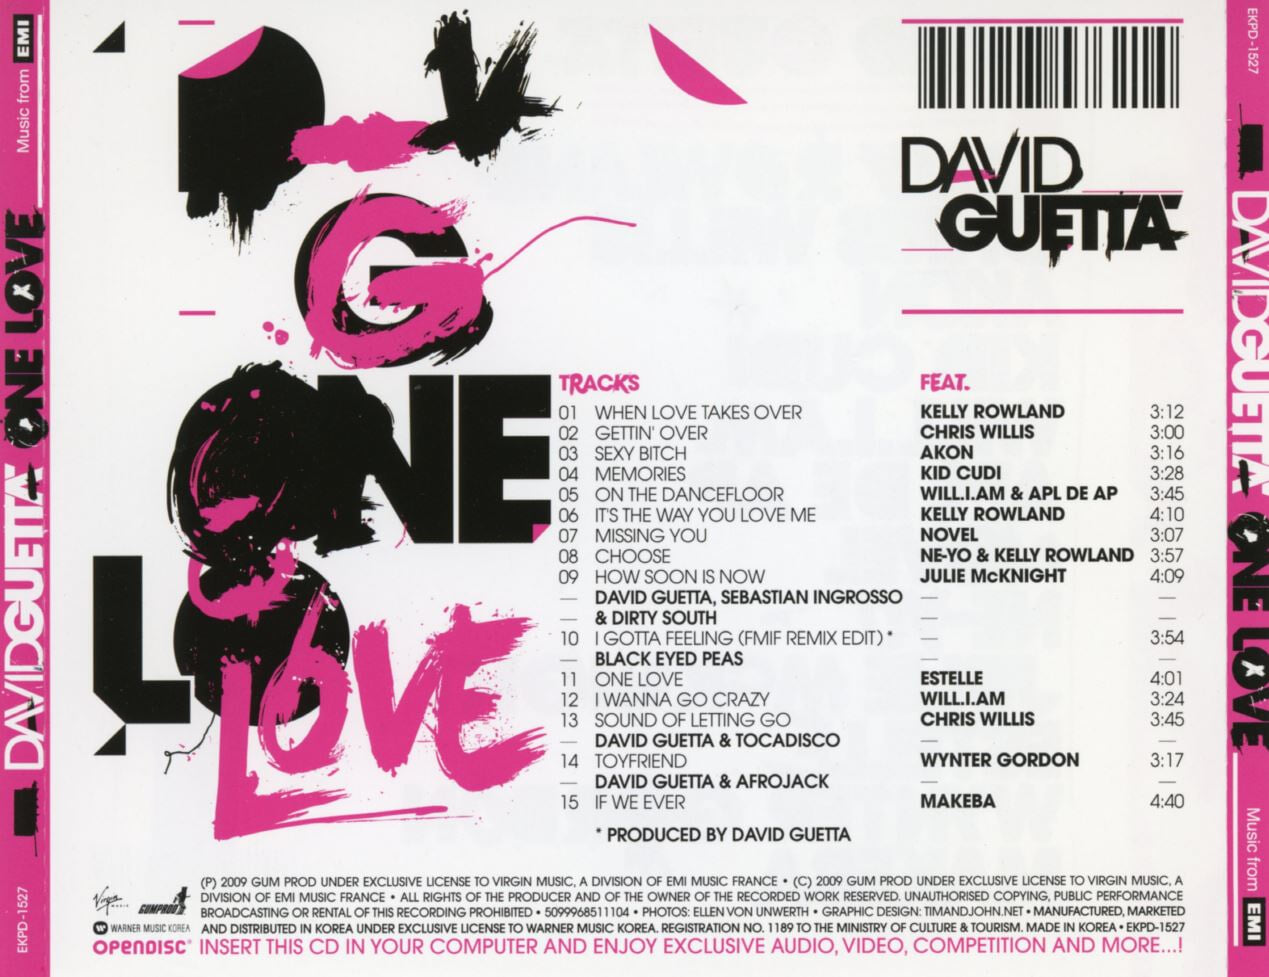 데이빗 게타 - David Guetta - One Love